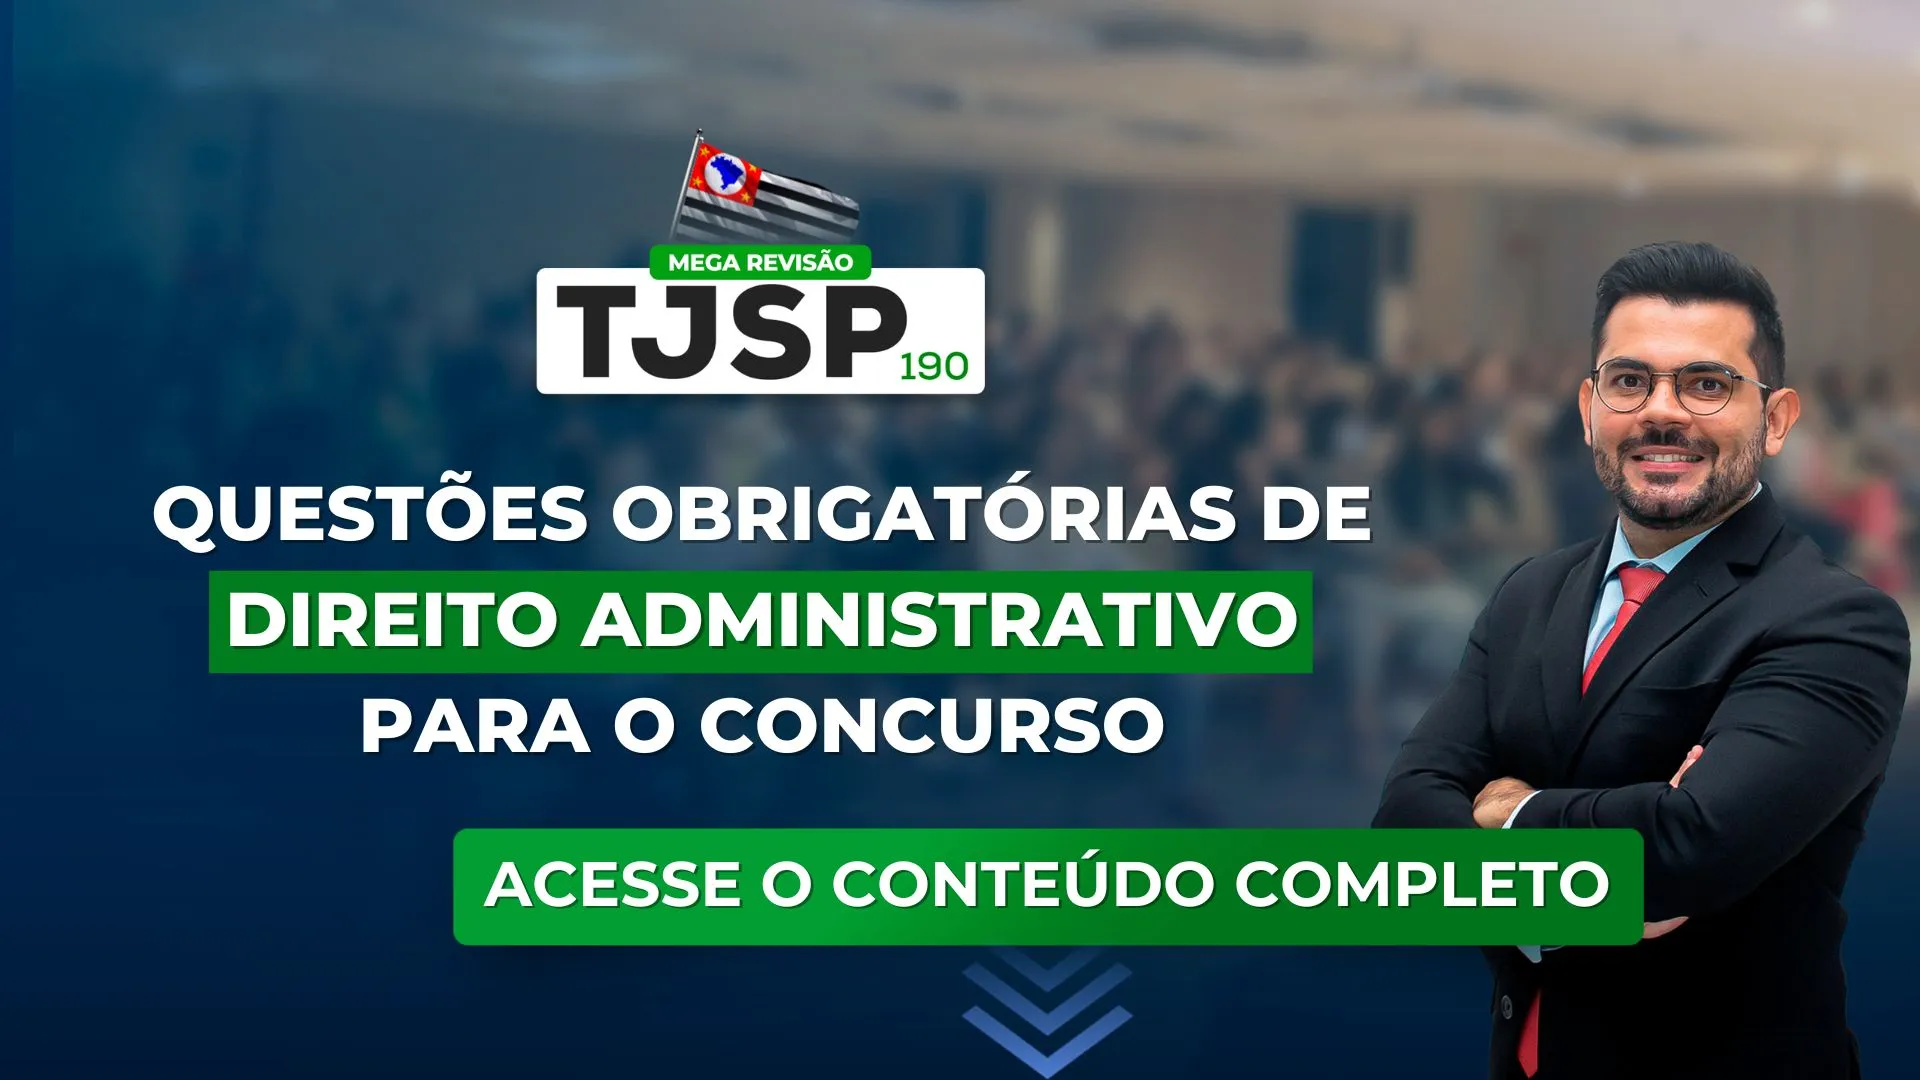 TJSP 190: Questões obrigatórias de Direito Administrativo para o concurso